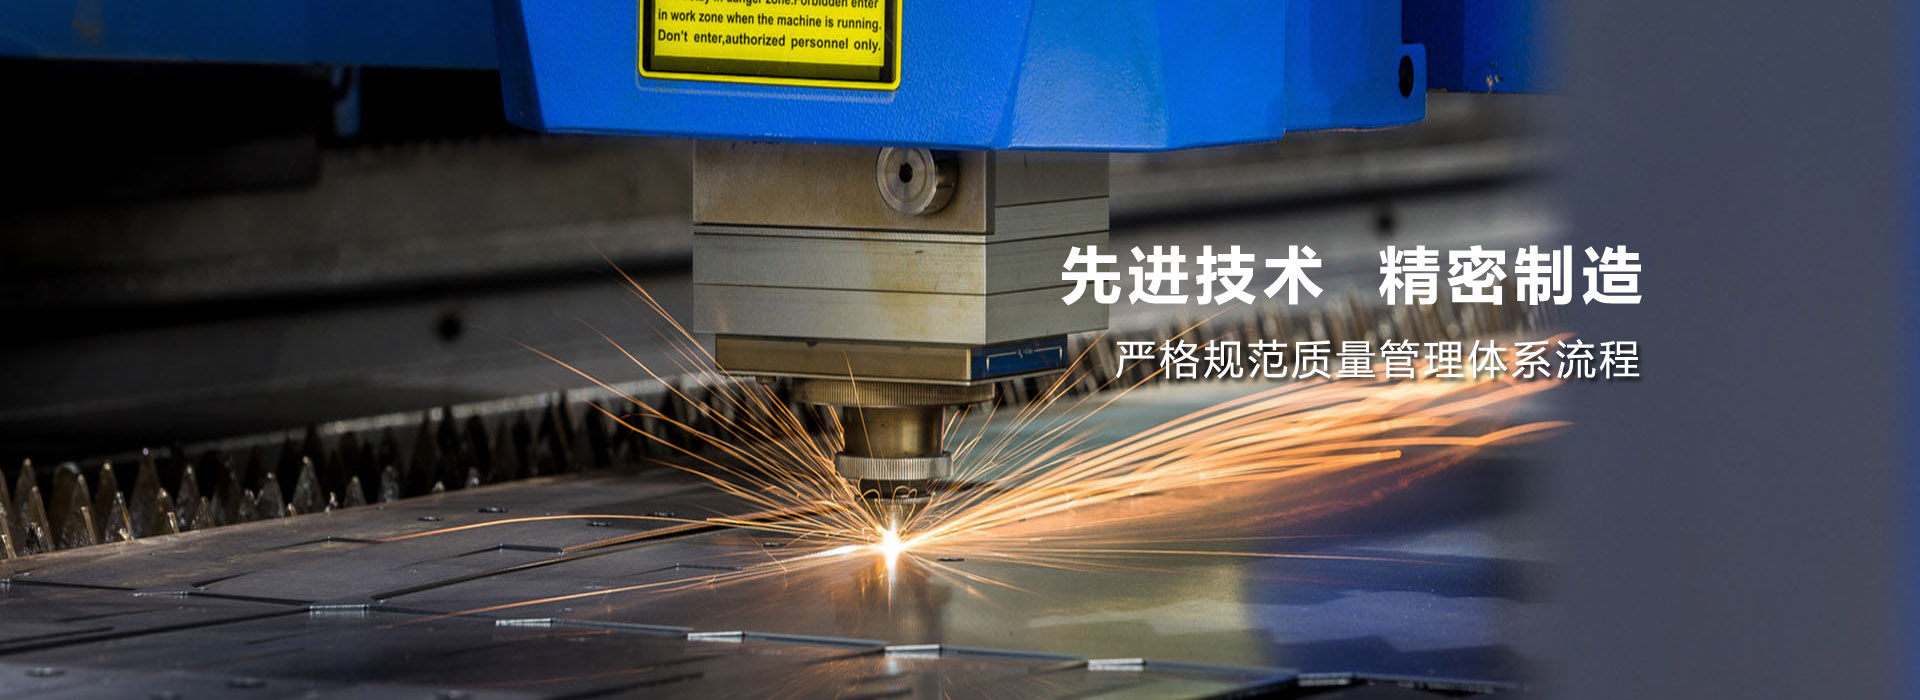 Dongguan Minggong Machinery Co., Ltd.